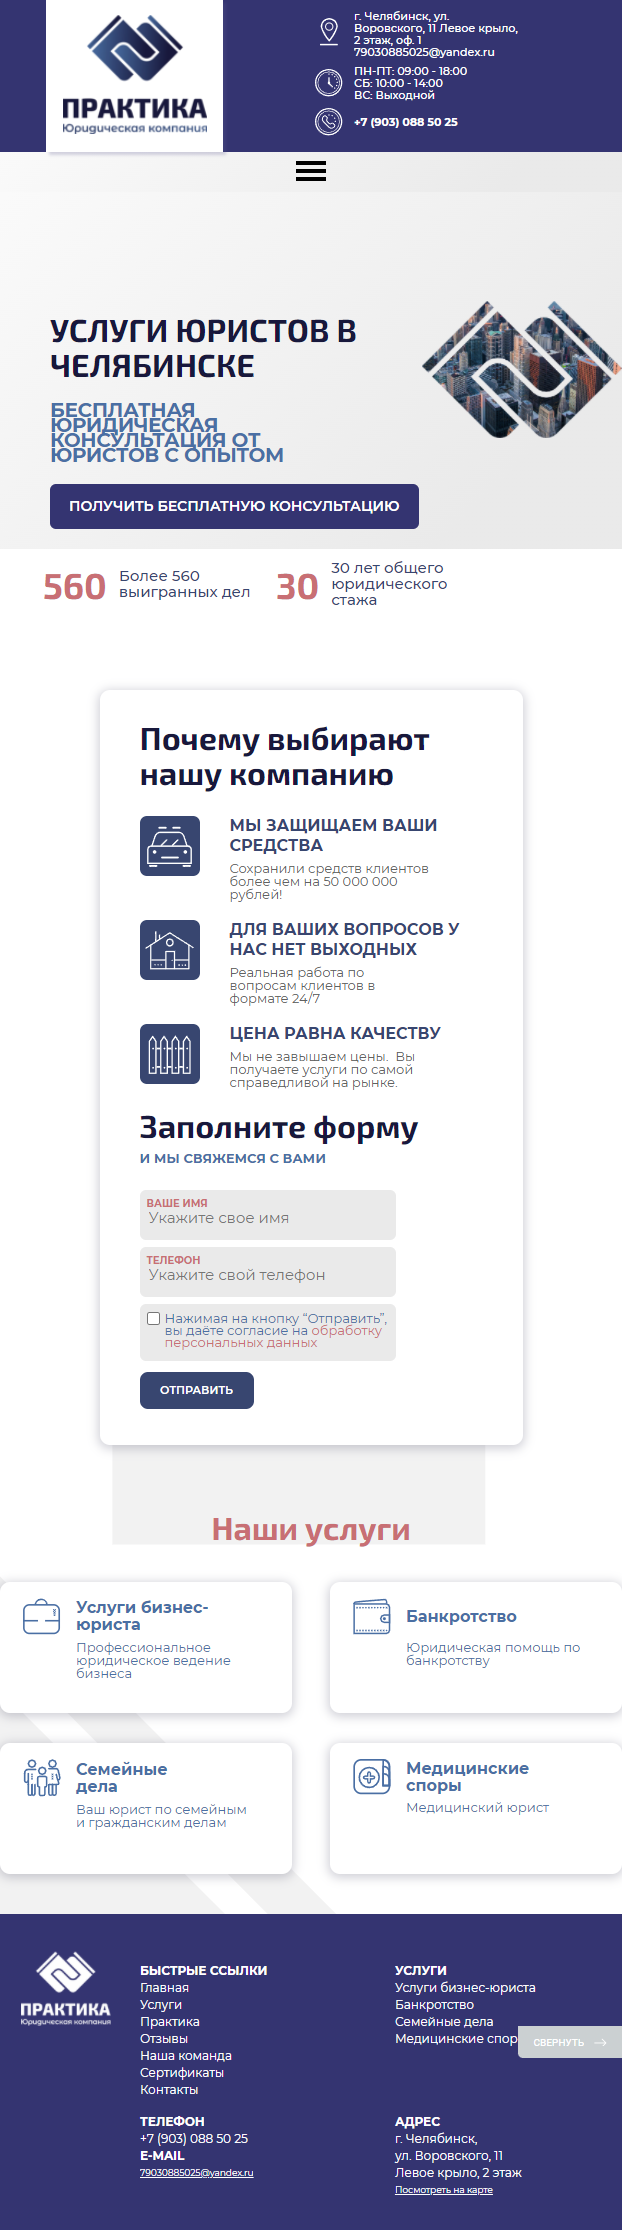 Разработка индивидуального сайта Юридической компании Практика